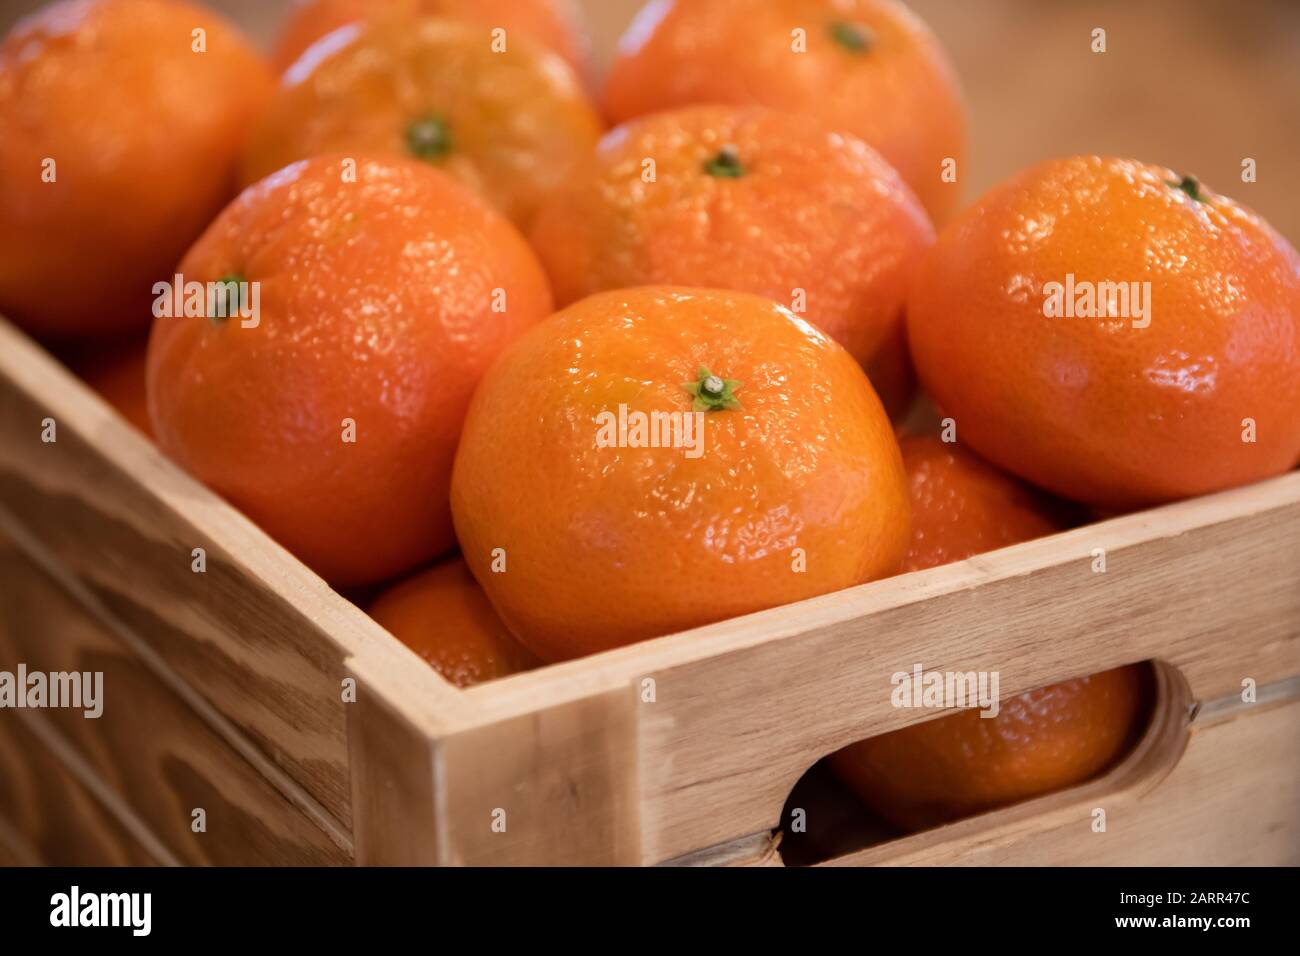 Mandarino arance in cassa di legno. Foto Stock